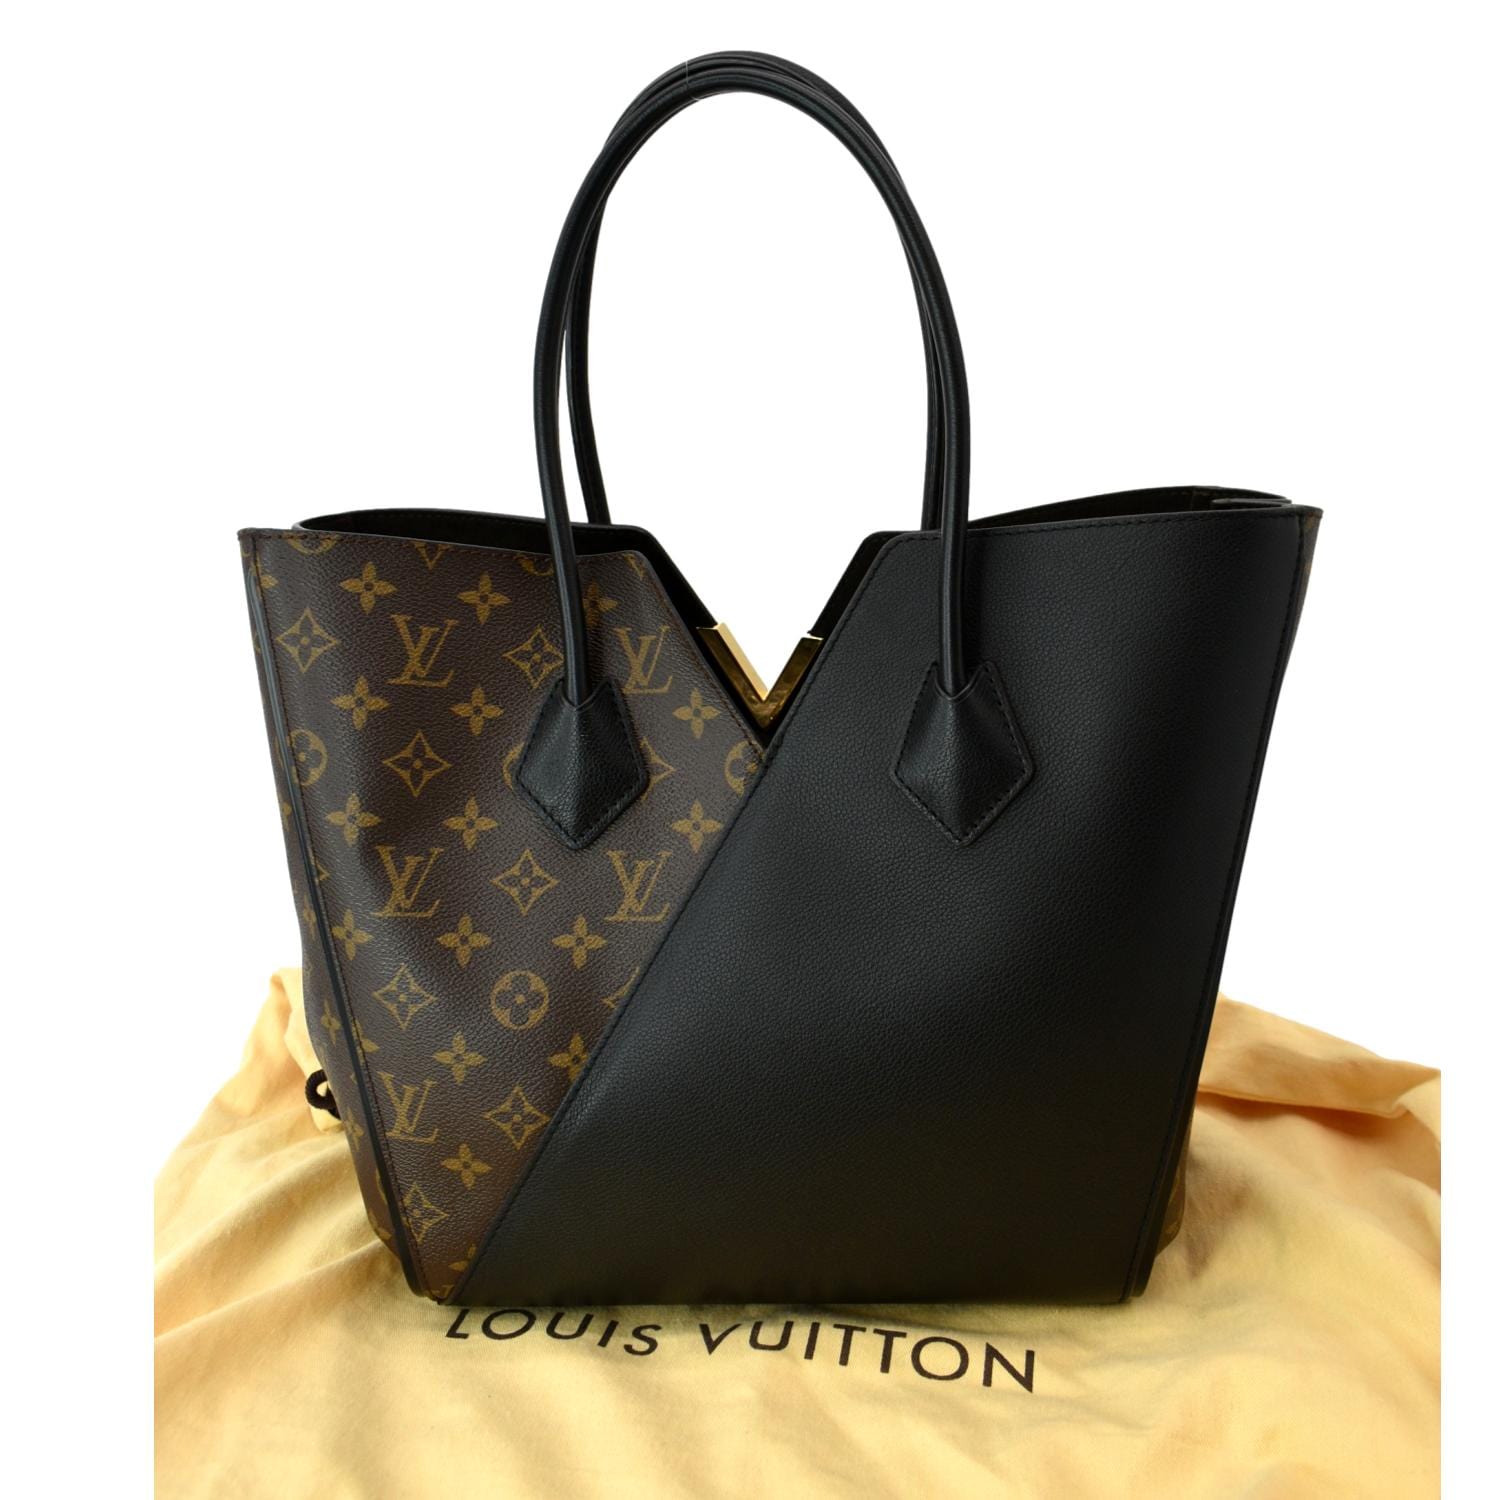 LOUIS VUITTON Kimono Monogram Leather Tote Bag Brown/Black